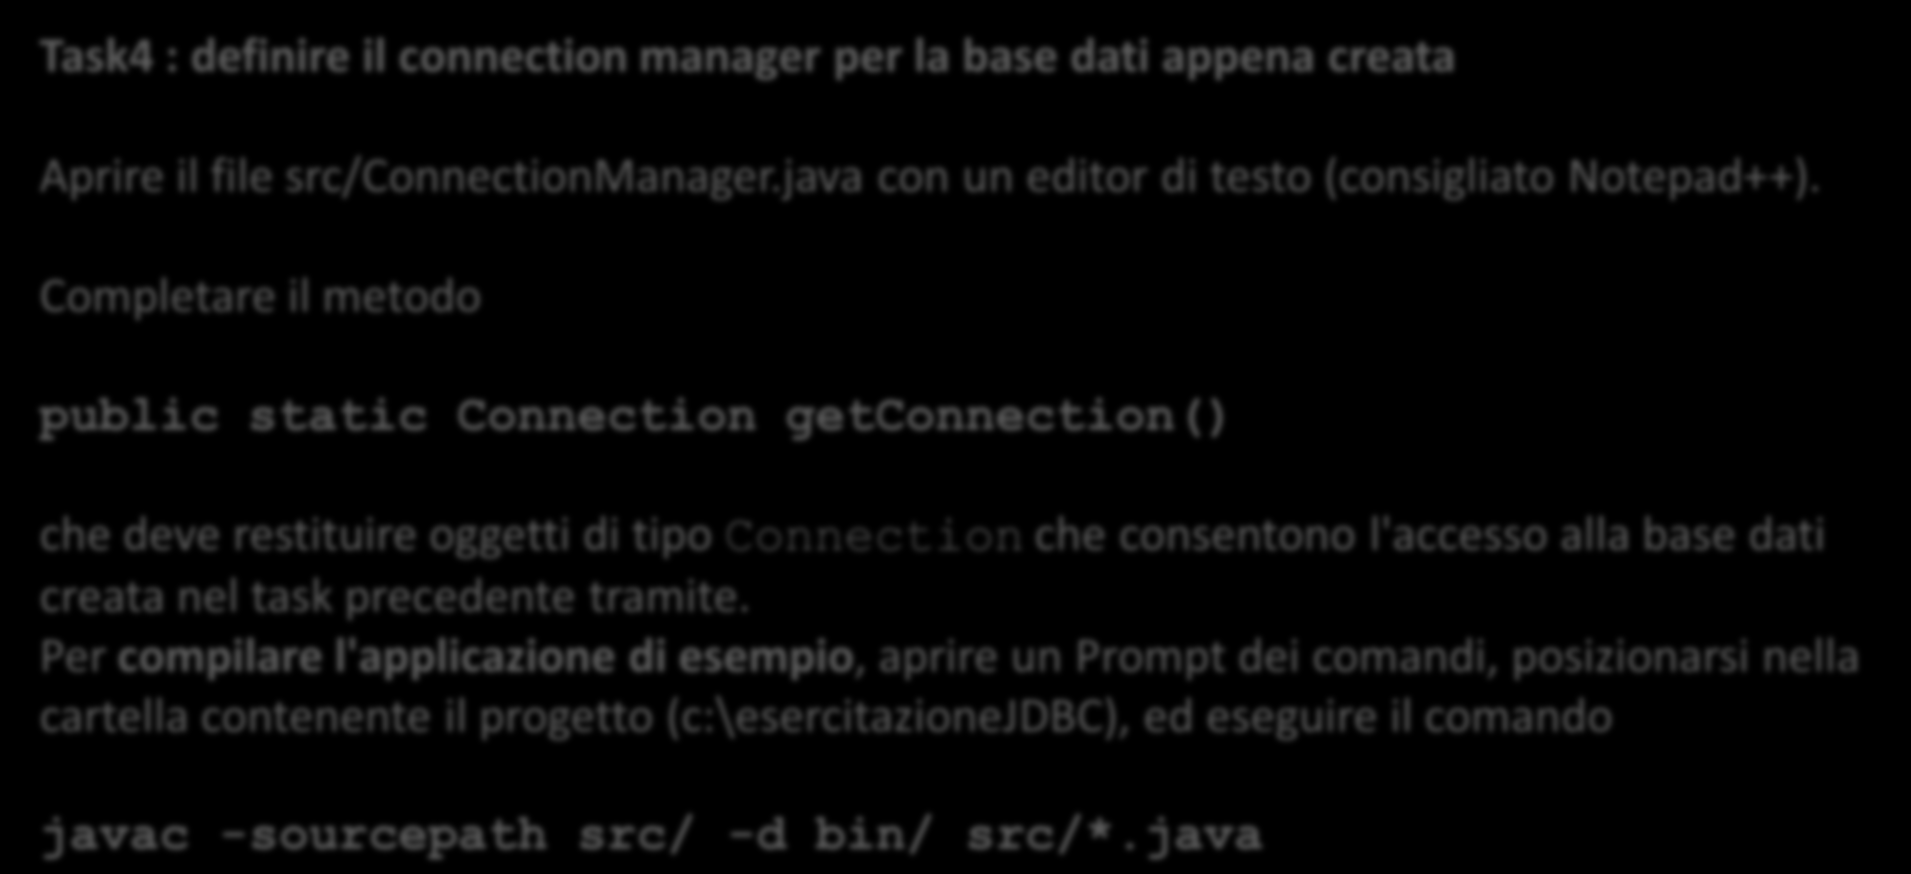 Task4 : definire il connection manager per la base dati appena creata Aprire il file src/connectionmanager.java con un editor di testo (consigliato Notepad++).